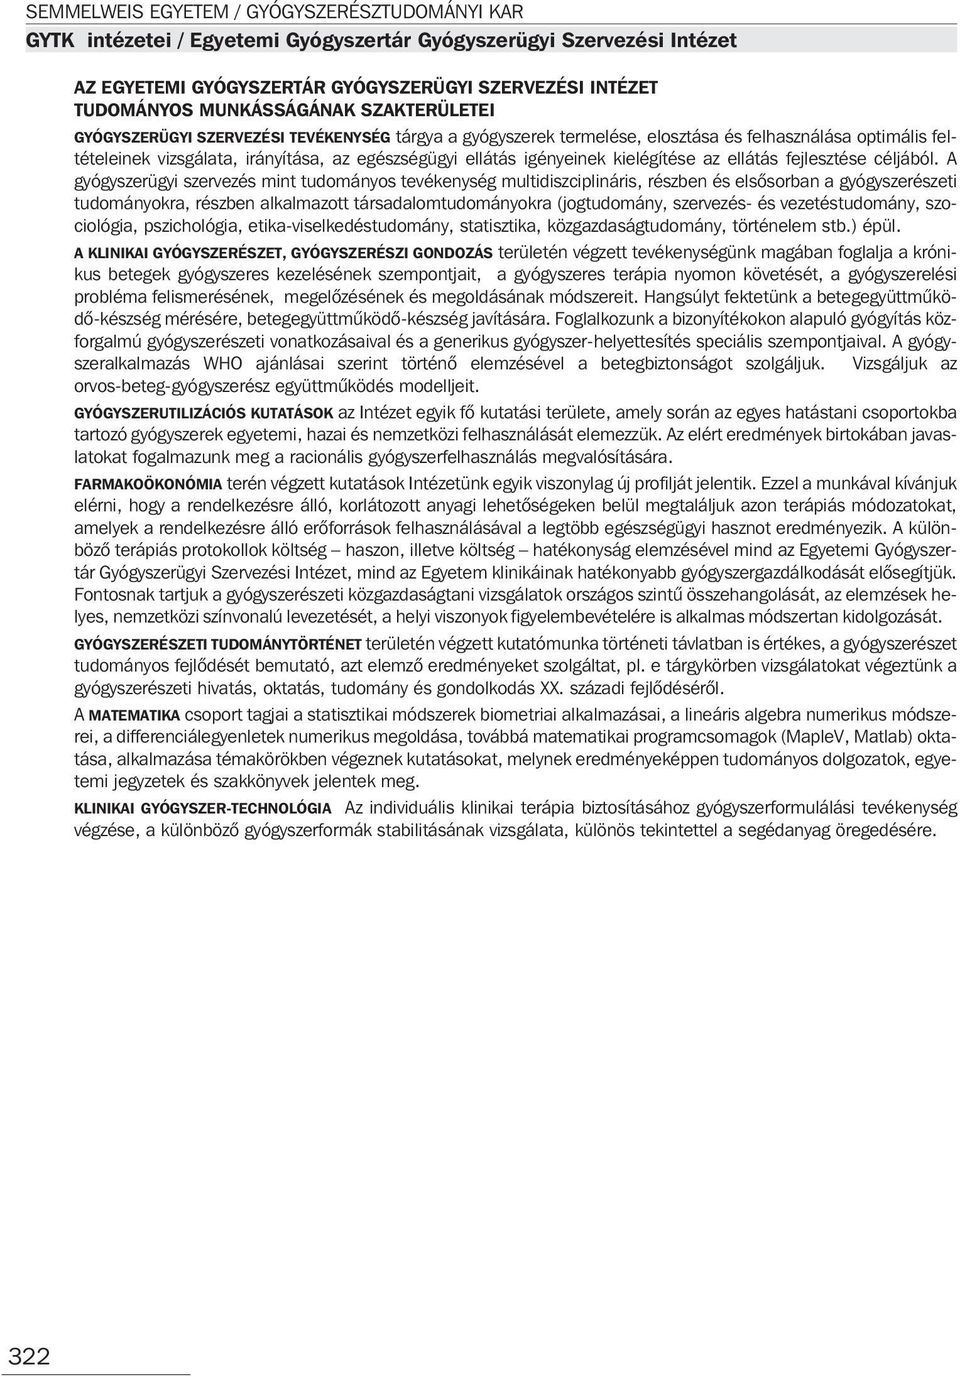 Semmelweis Egyetem Gyógyszerésztudományi Kar (GYTK) - PDF Free Download